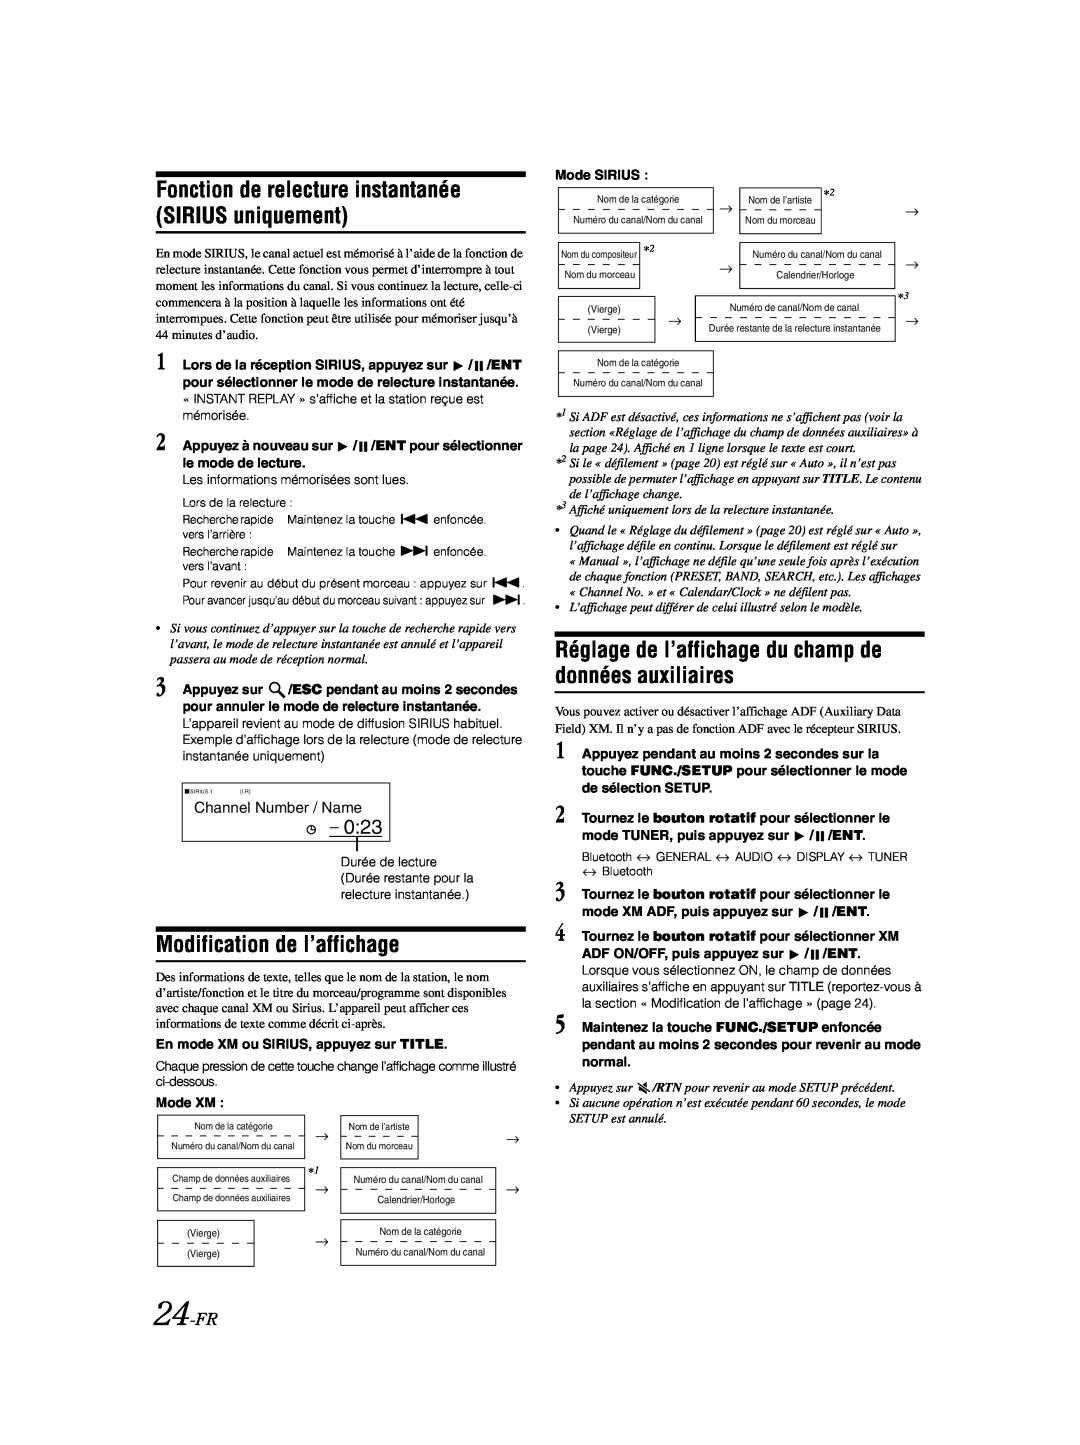 Alpine CDA-9885 owner manual Modification de l’affichage, 0:23, 24-FR, Channel Number / Name 